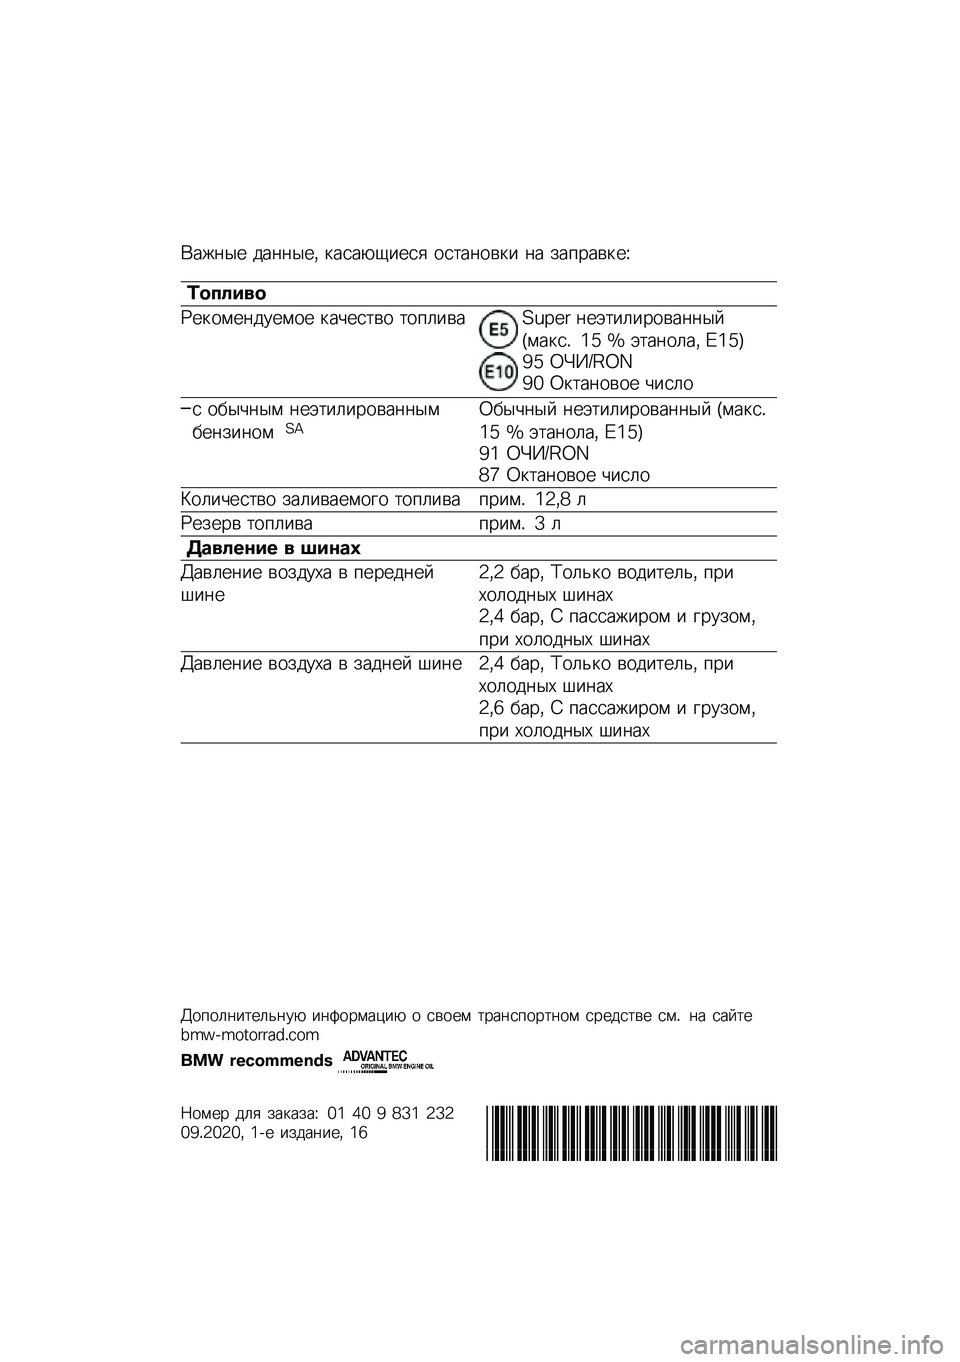 BMW MOTORRAD C 400 X 2020  Руководство по эксплуатации (in Russian) �(���	�� ���	�	���* �
����-�1���� ���
��	���
� �	� ���%����
��O
�	������
�P��
����	������ �
��&���
�� �
��%�����Q�M�R�9�: �	��+�
��������	